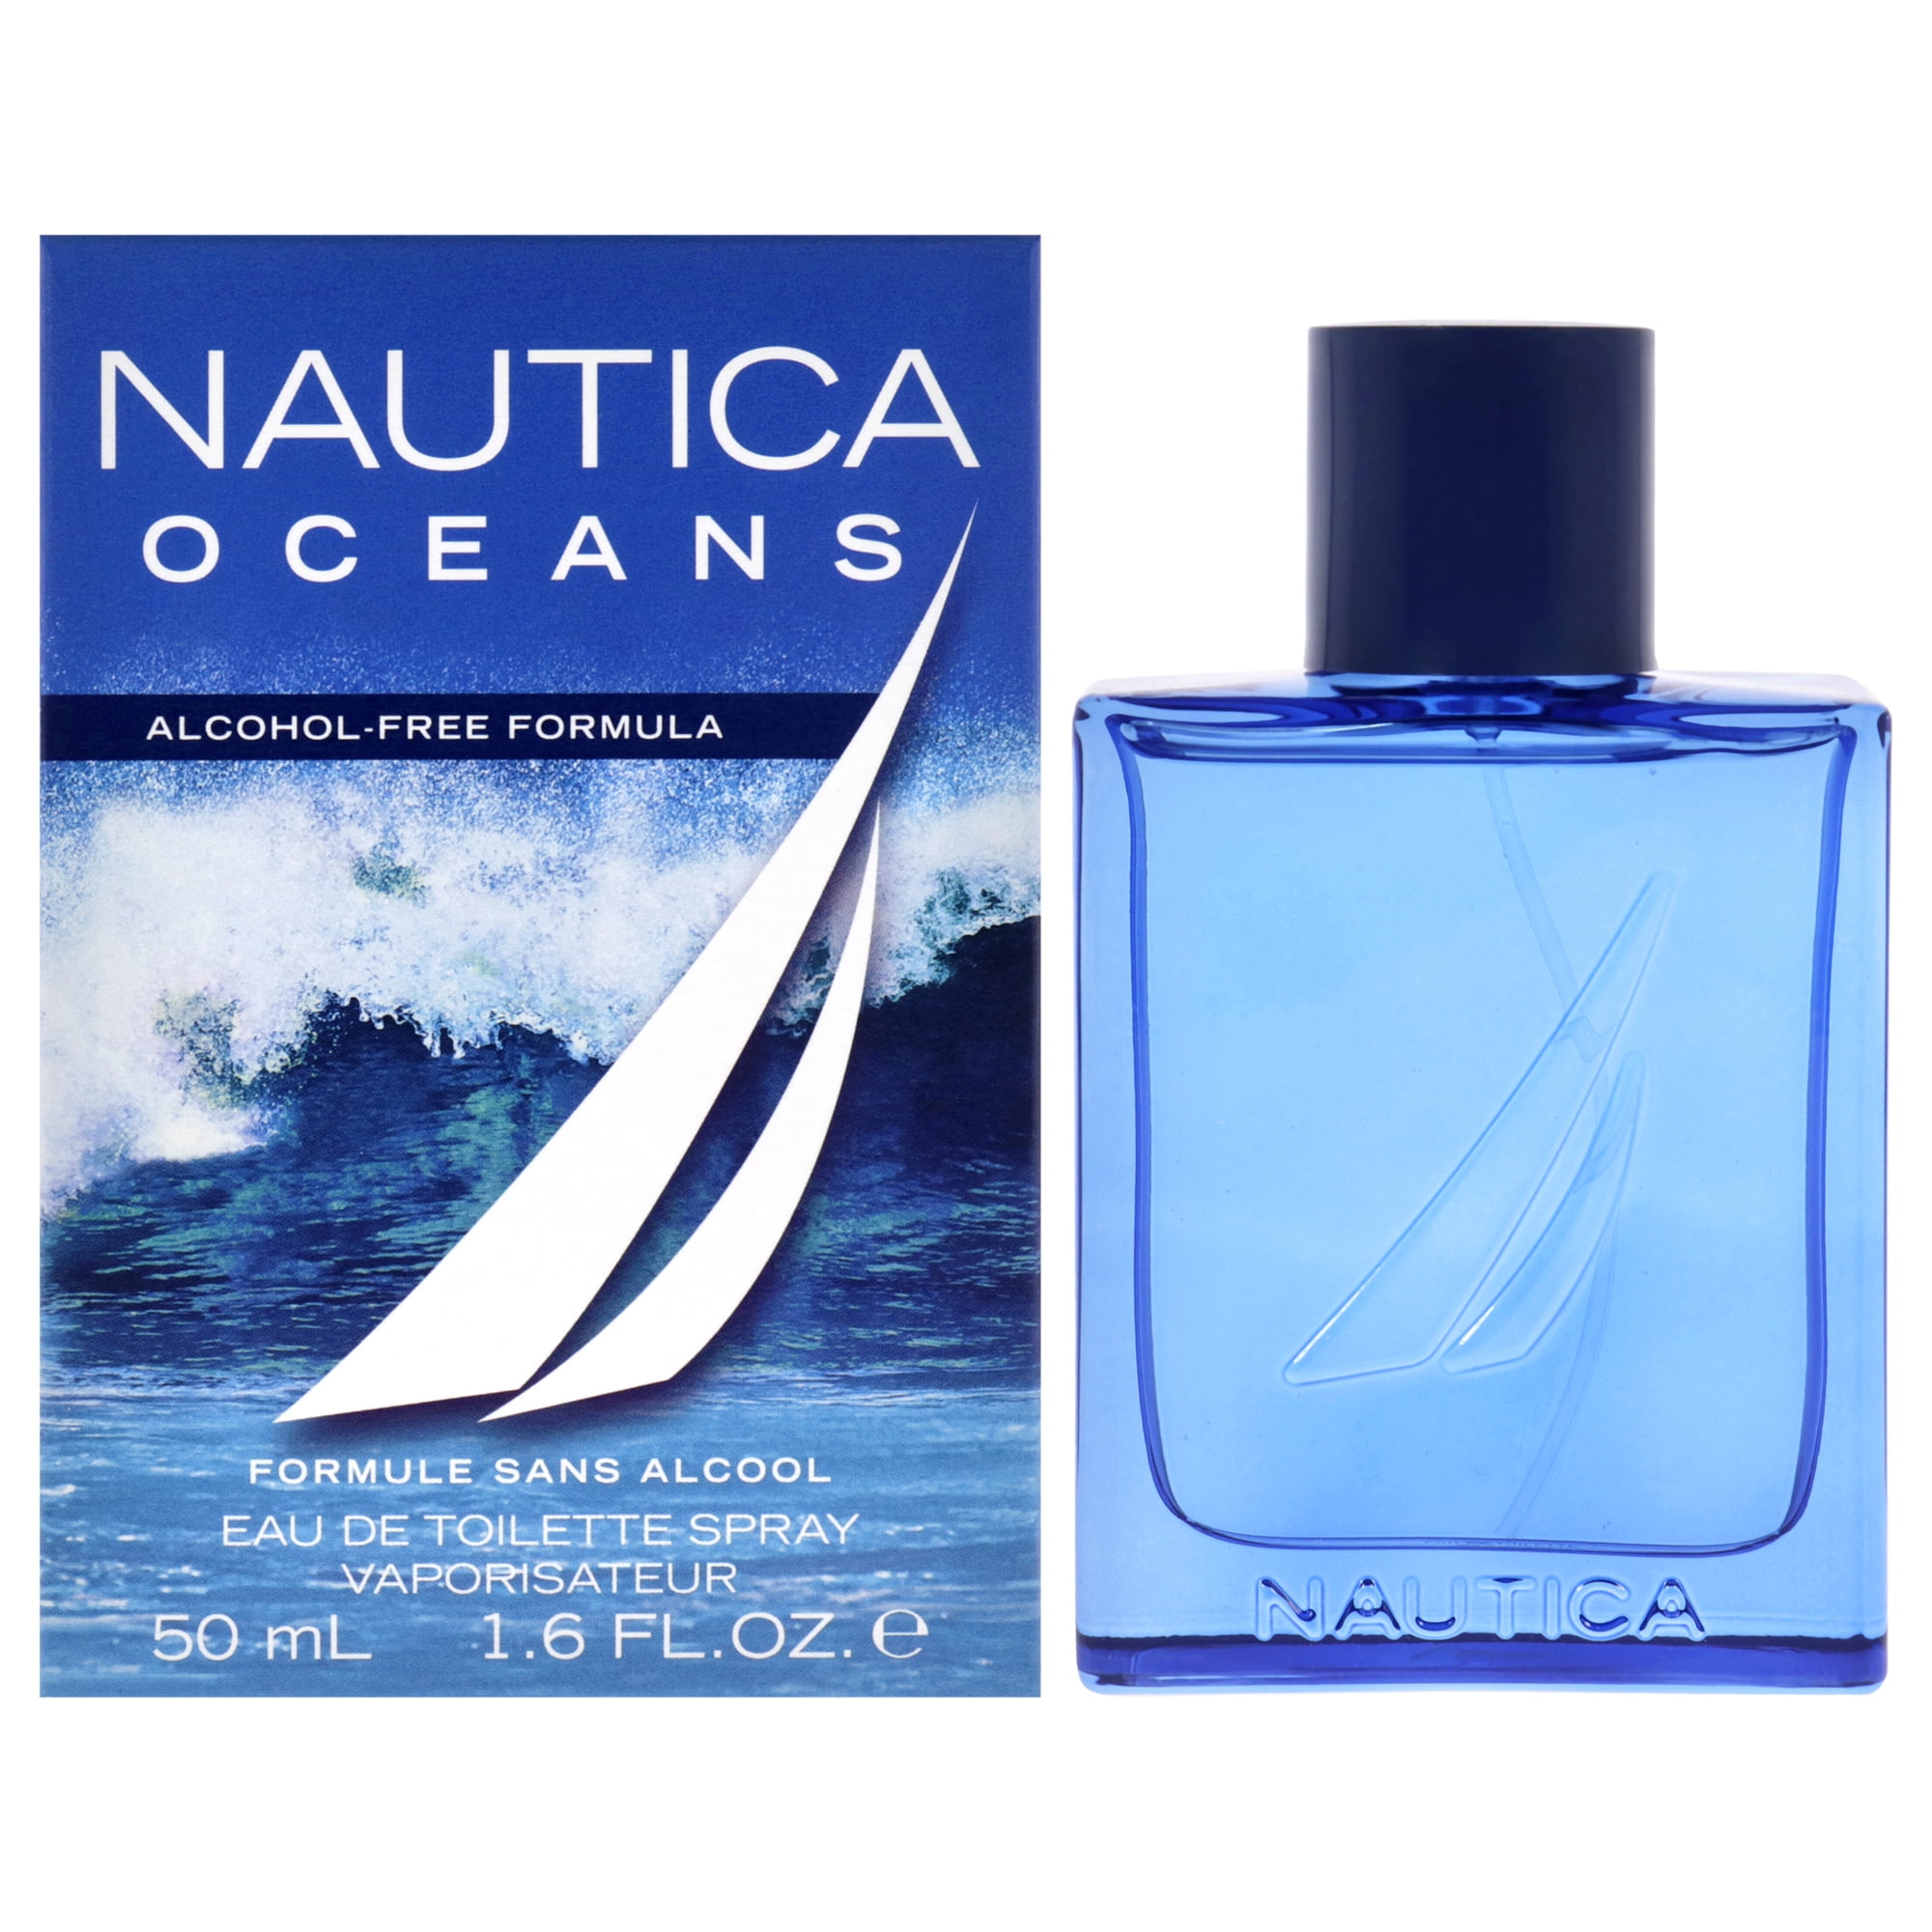 Nautica Oceans by Nautica for Men - 1.6 oz EDT Spray